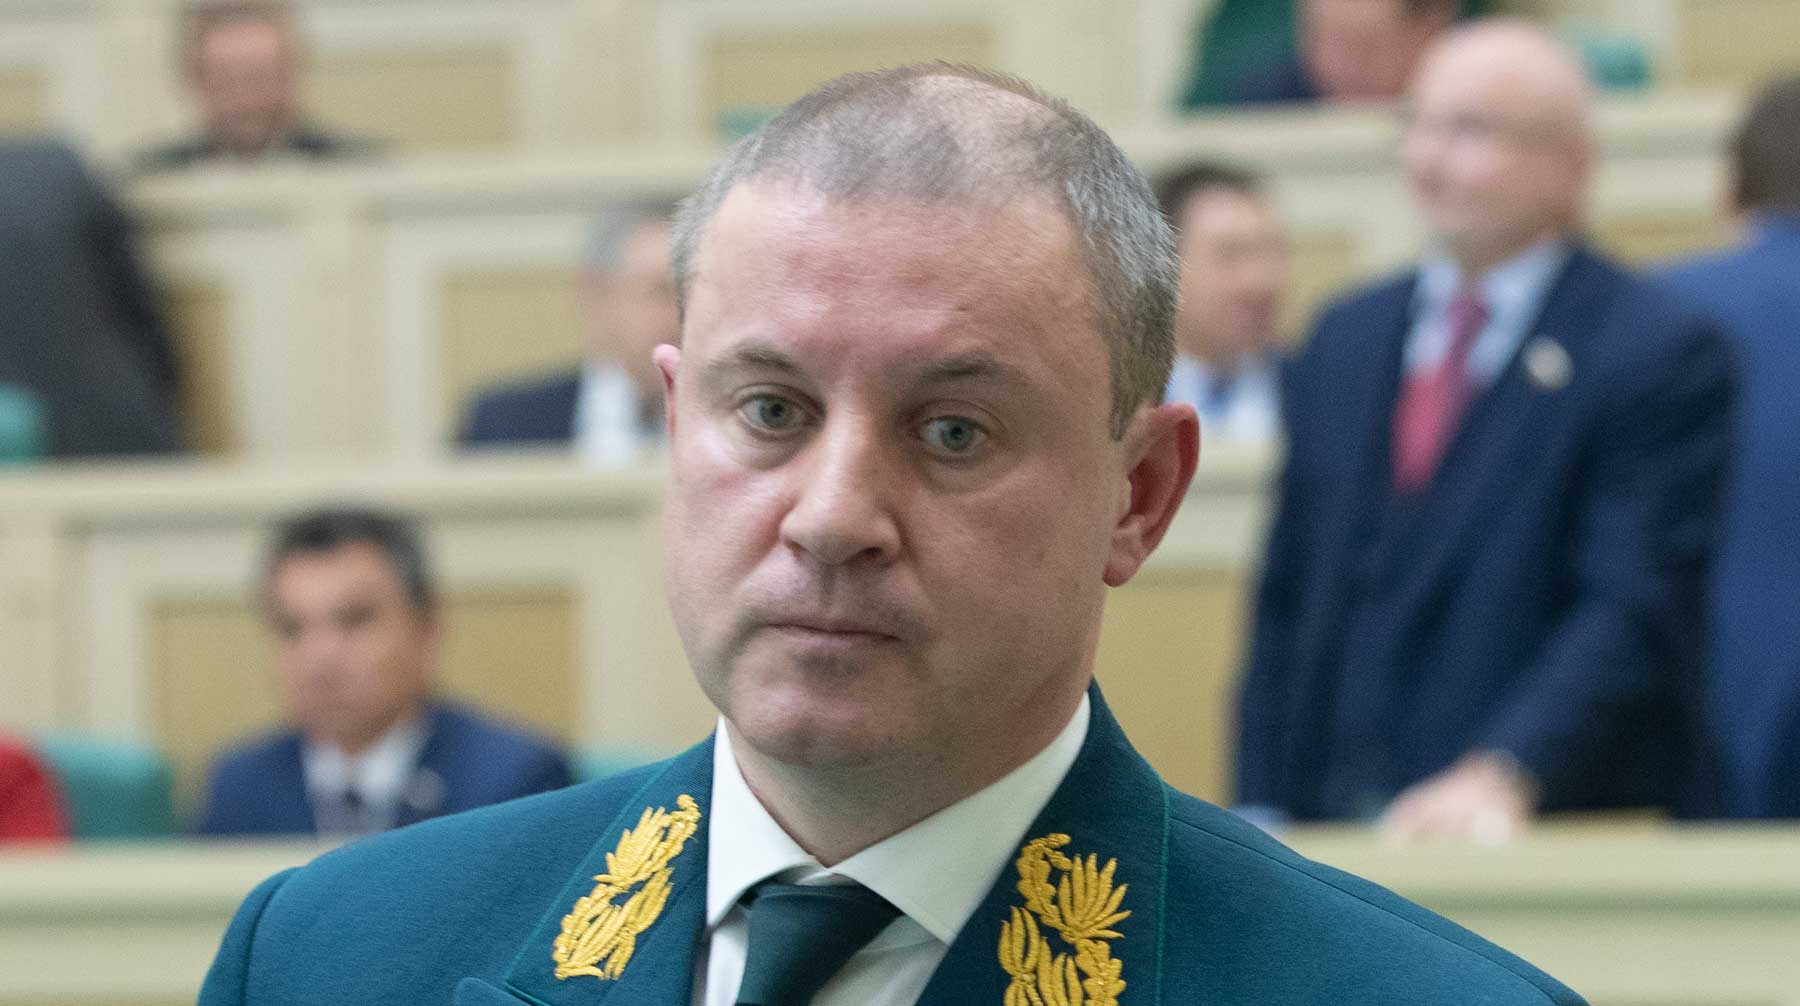 Иван Валентик написал заявление на увольнение на имя главы кабмина Дмитрия Медведева Иван Валентик